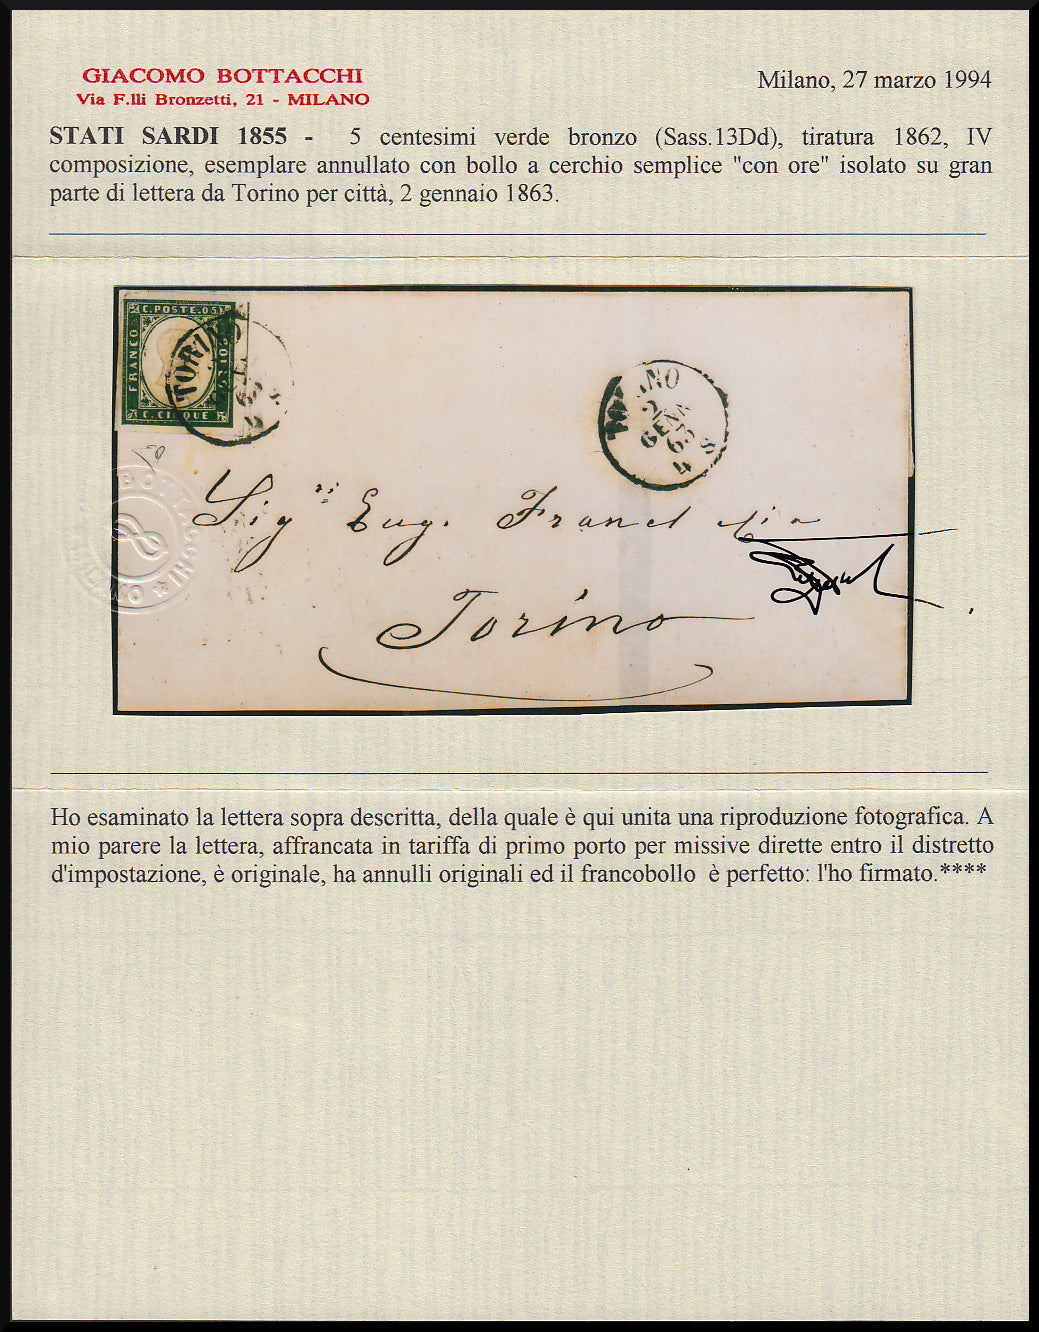 1862 - IV emissione, c.5 verde bronzo isolato su lettera da Torino per città (13Dd)